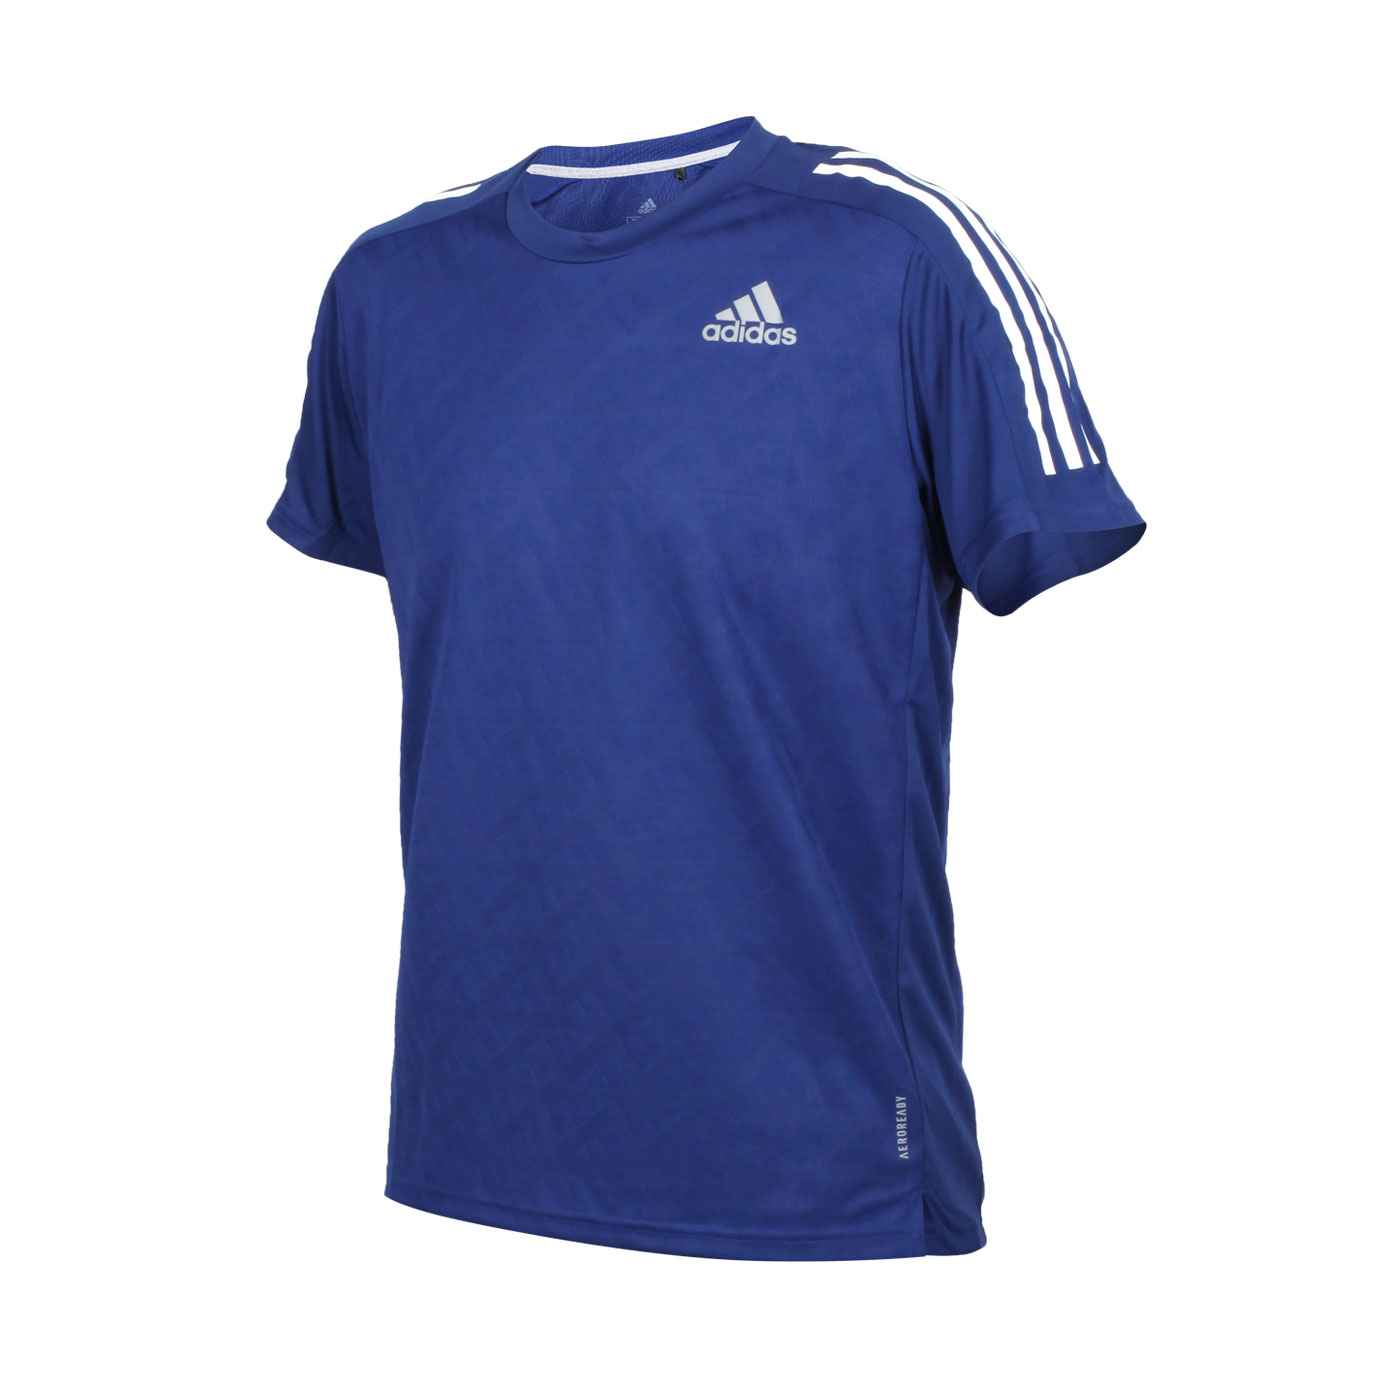 ADIDAS 男款短袖T恤 H36451 - 藍白銀